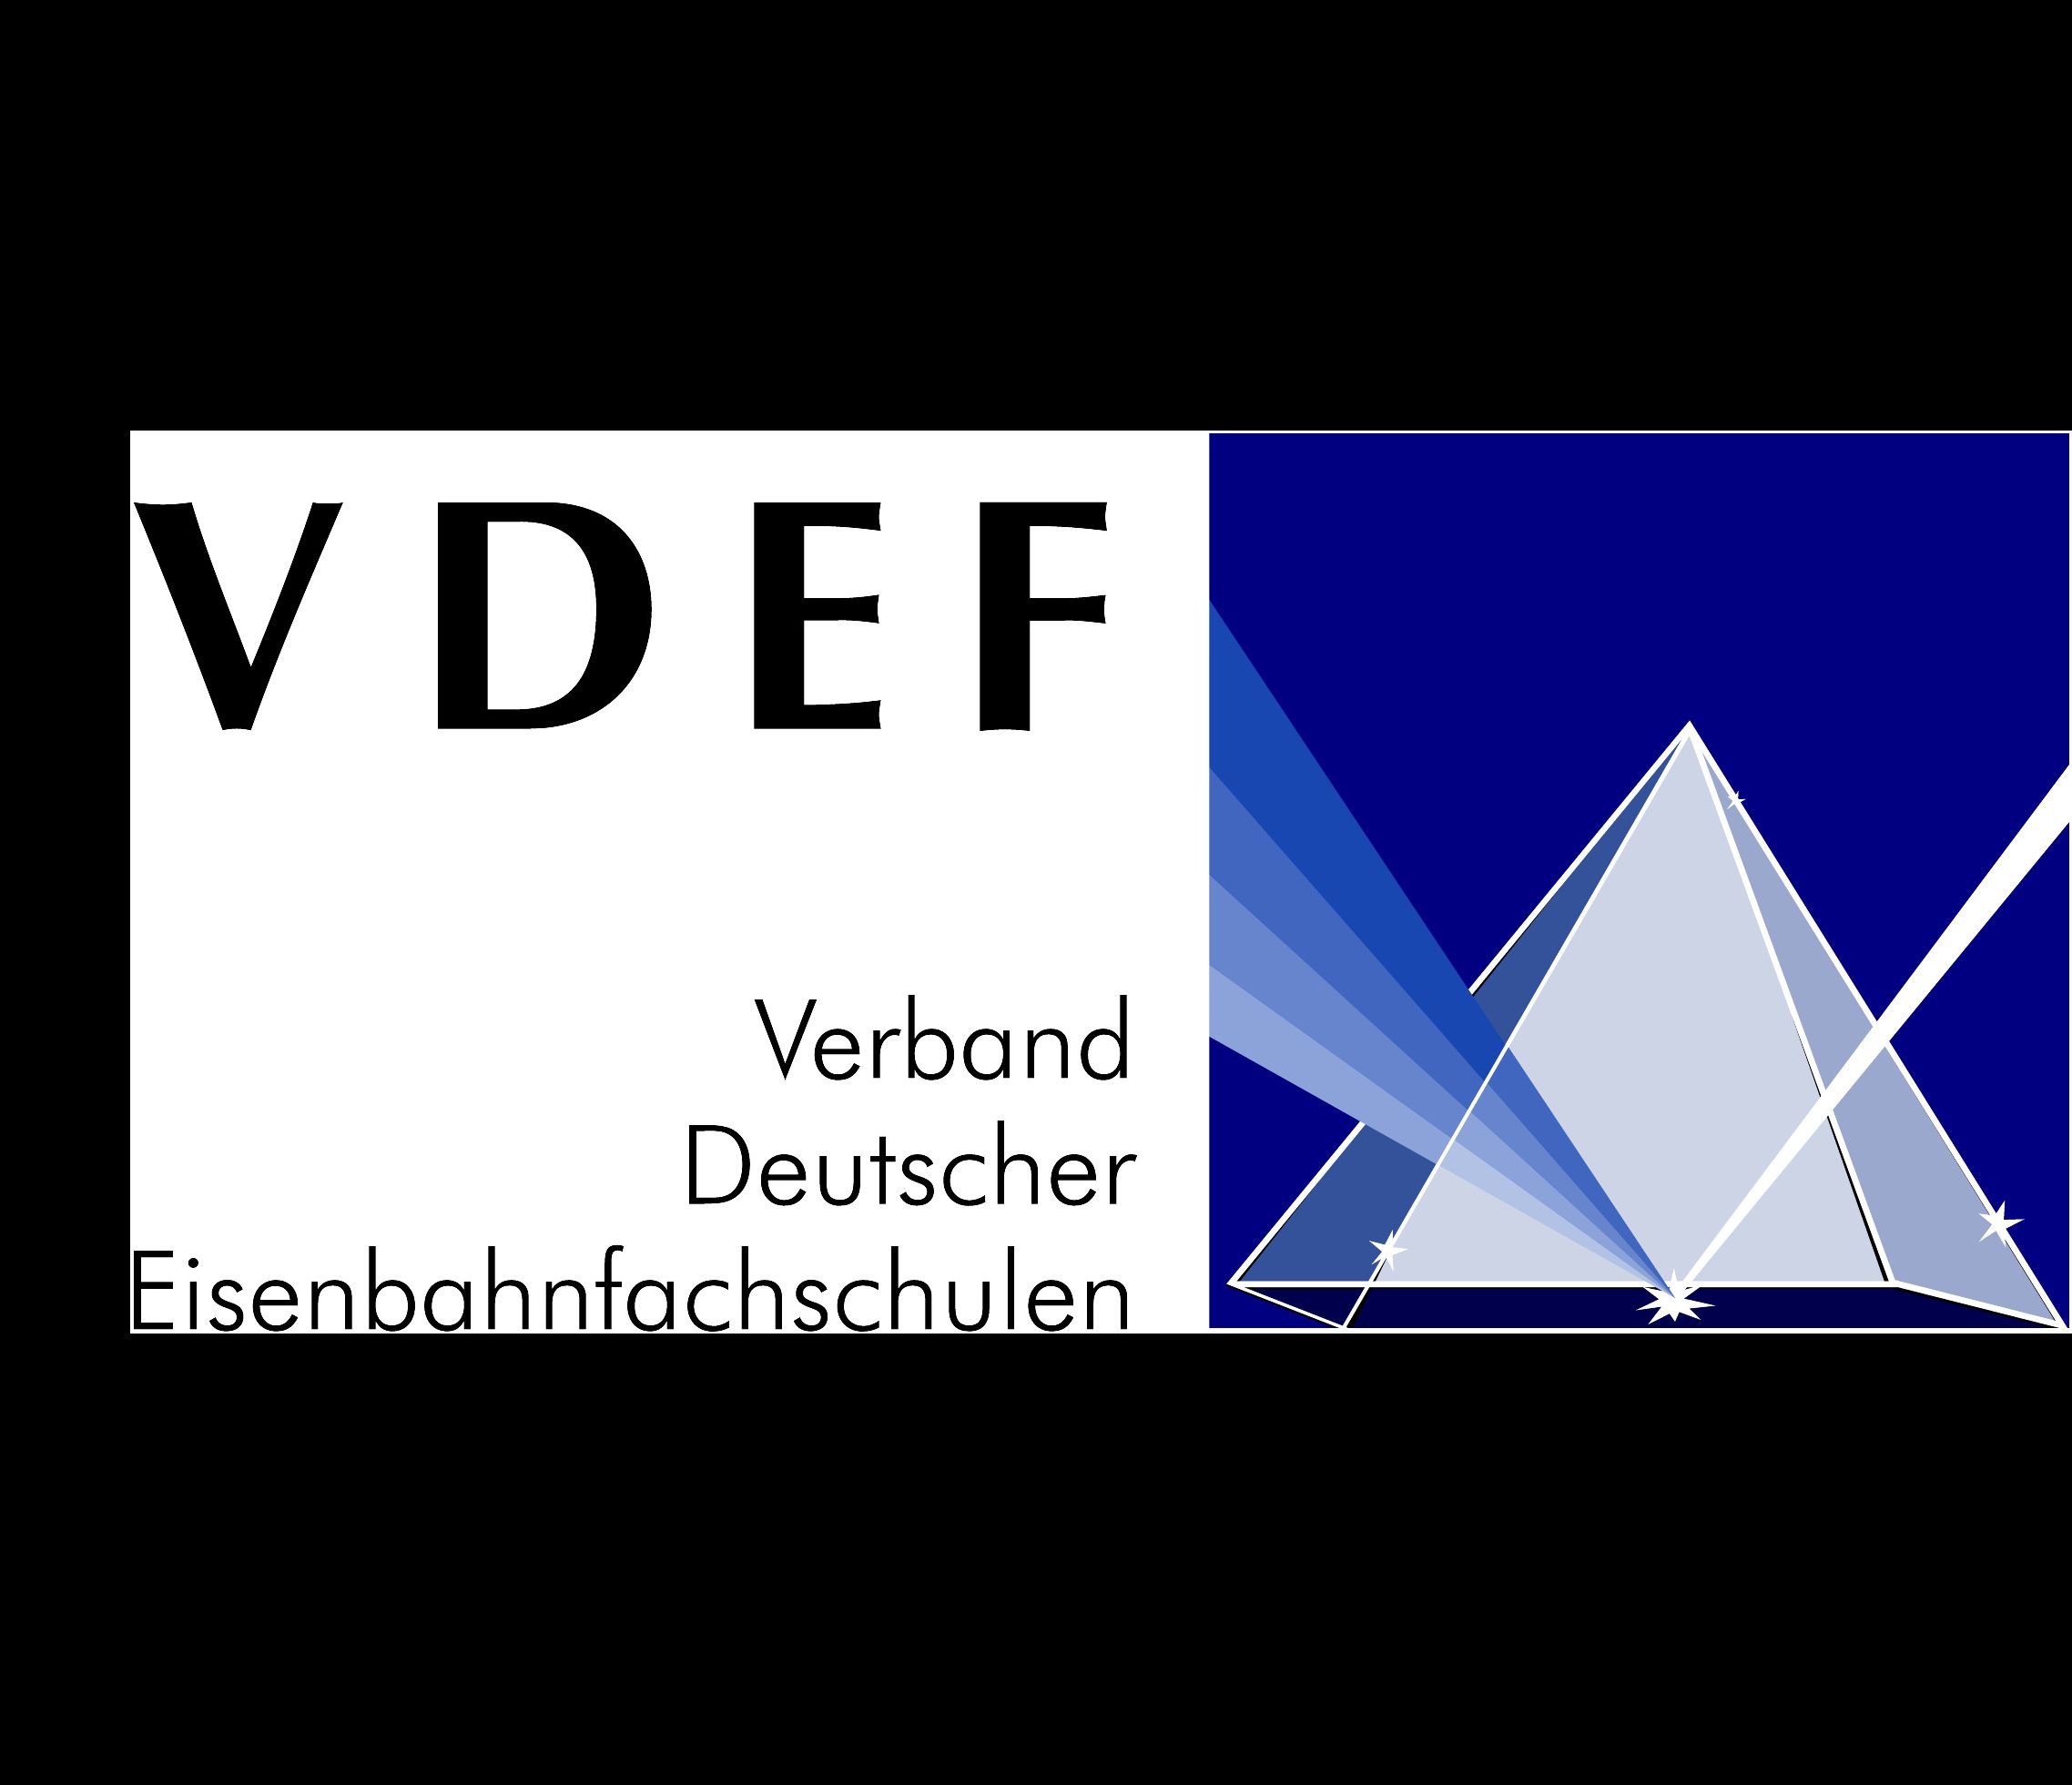 Verband Deutscher Eisenbahnfachschulen e. V. (VDEF)